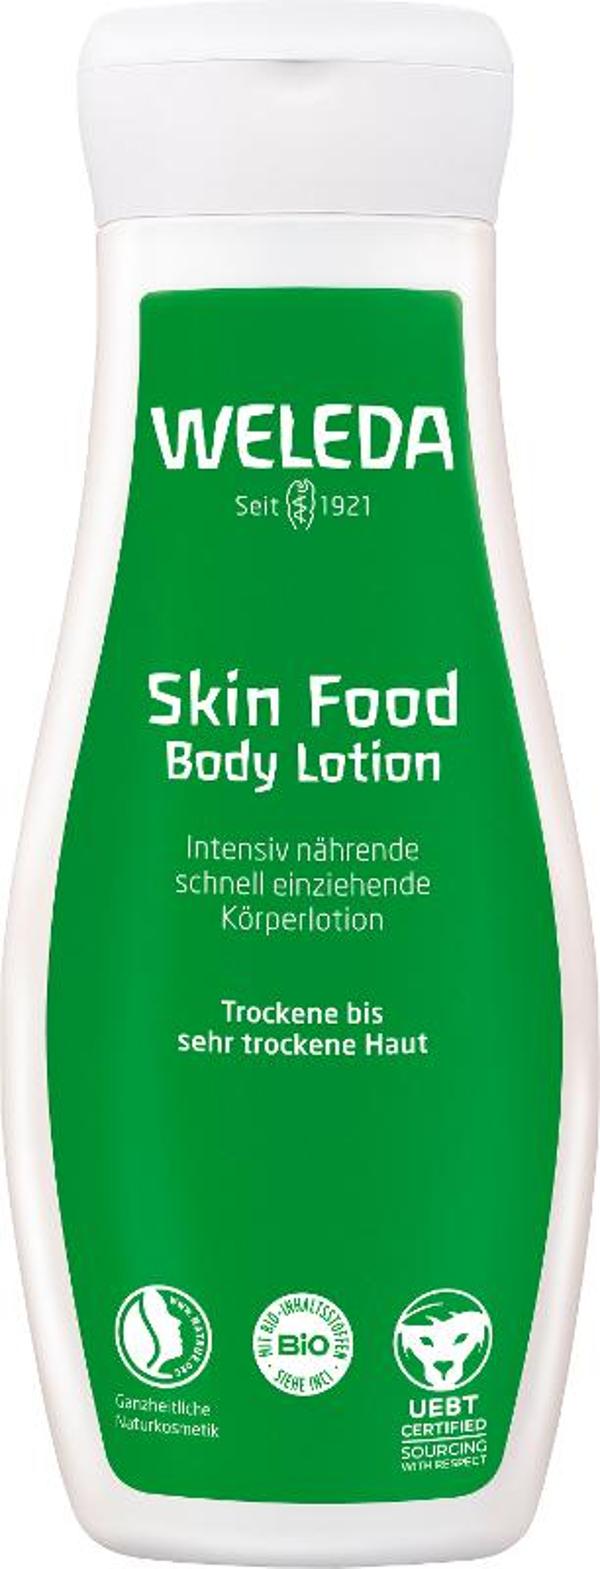 Produktfoto zu Skin Food Body Lotion - 200ml